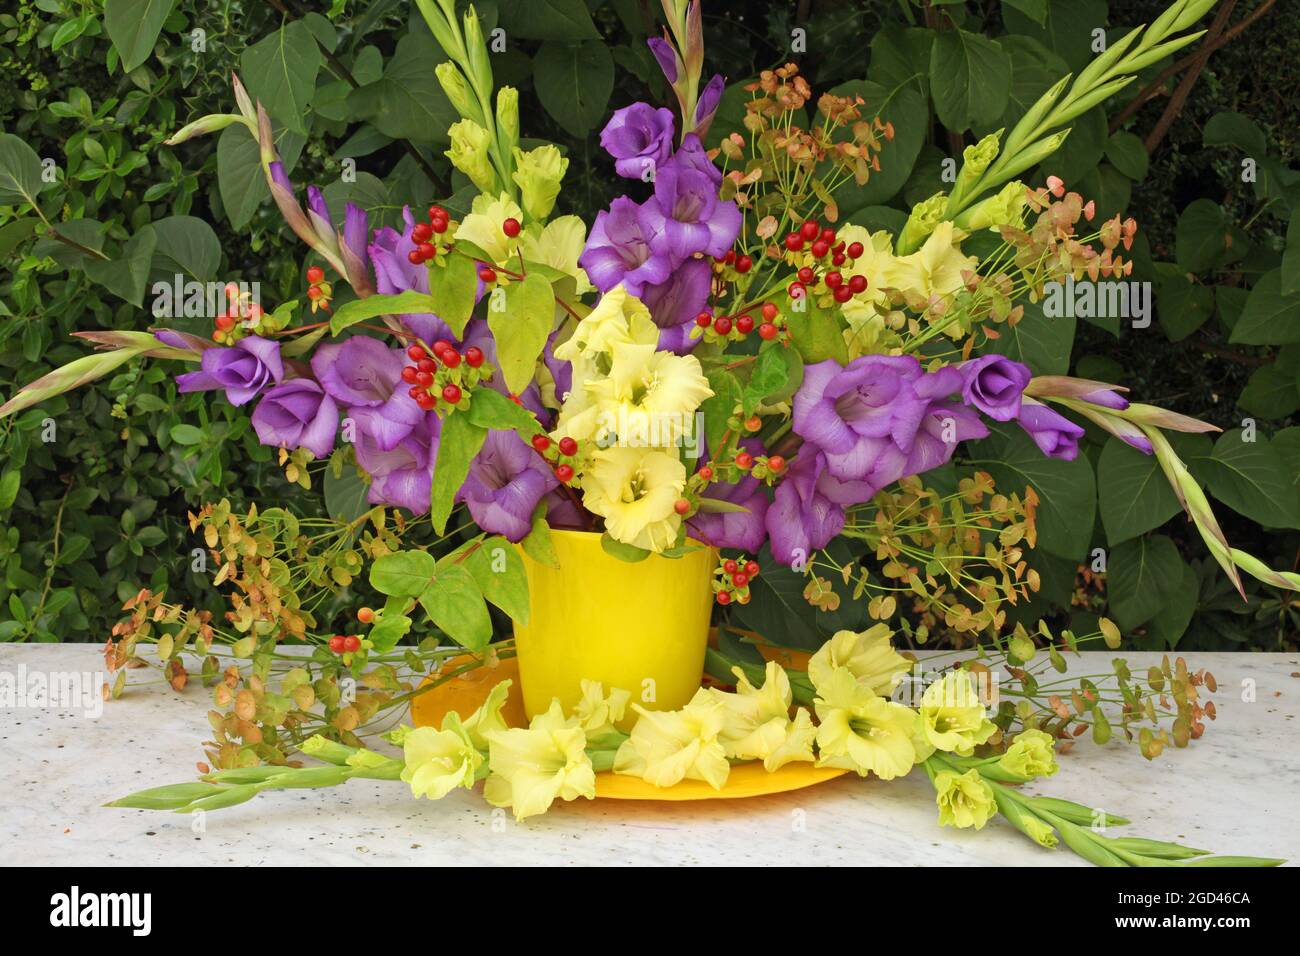 botanik, gelber und violetter Gladiolus und Hypericum in einer gelben Vase auf einem Marmortisch, ZUSÄTZLICHE-RIGHTS-CLEARANCE-INFO-NOT-AVAILABLE Stockfoto